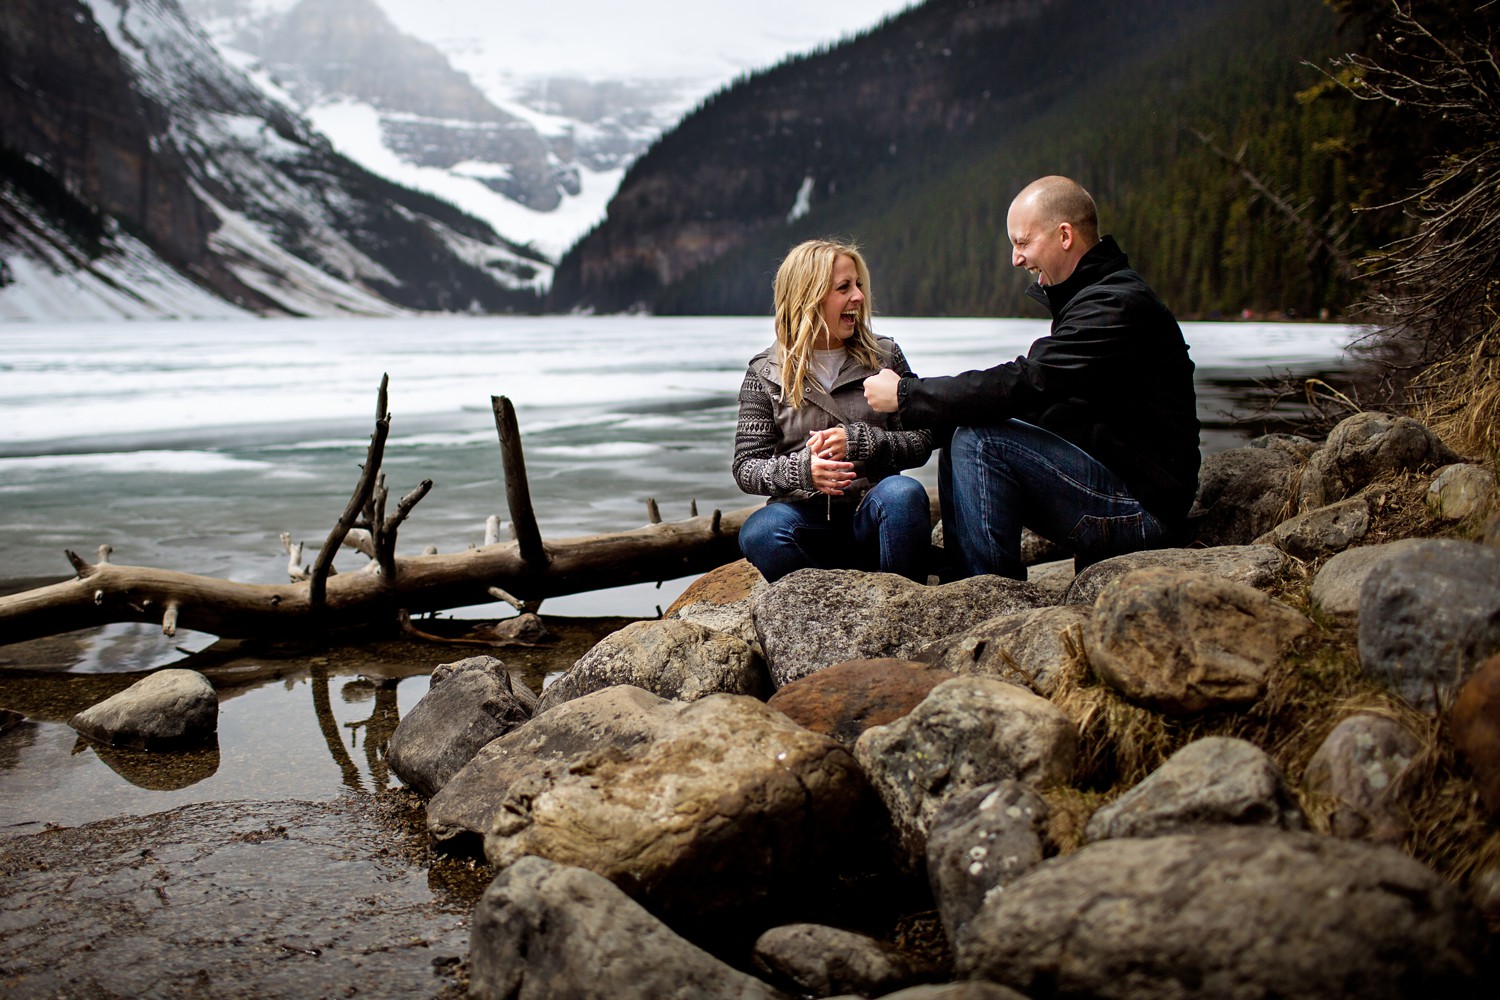 sesja zaręczynowa w kanadzie i zdjęcia zaręczynowe kanada